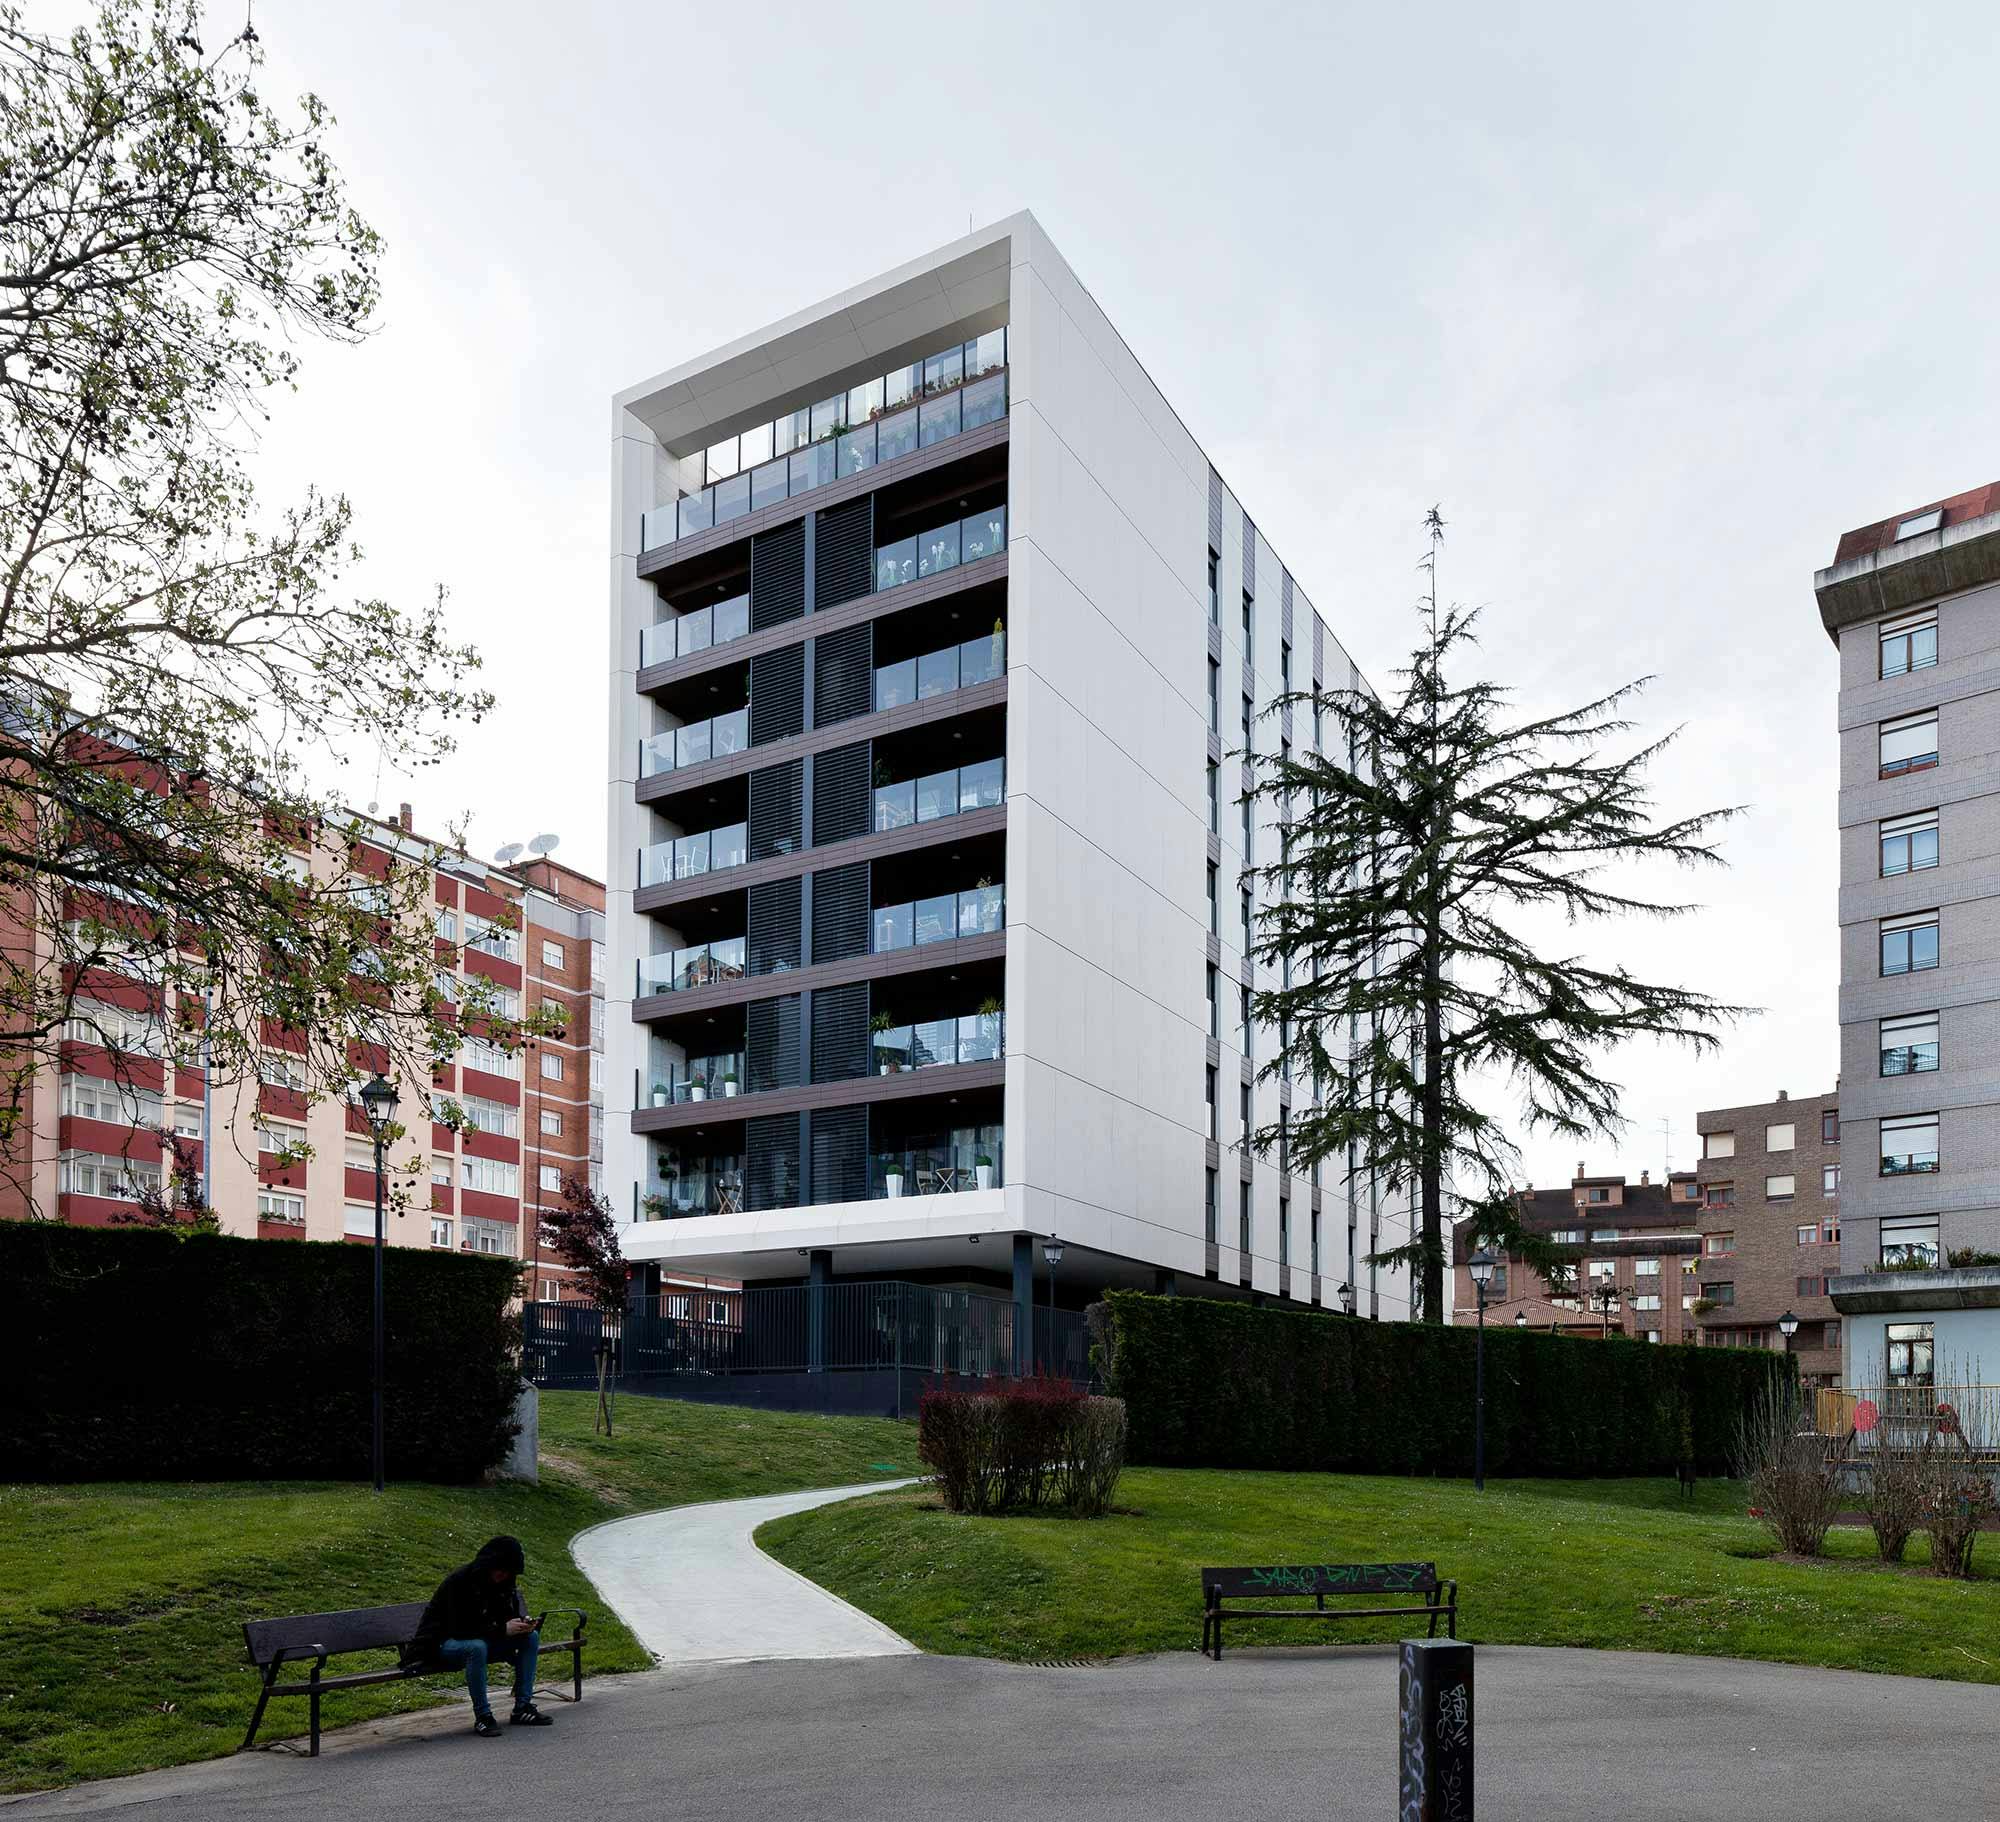 Image 36 of Edificio viviendas oviedo sanatorio blanco 6.jpg?auto=format%2Ccompress&ixlib=php 3.3 in The Pacific - Cosentino